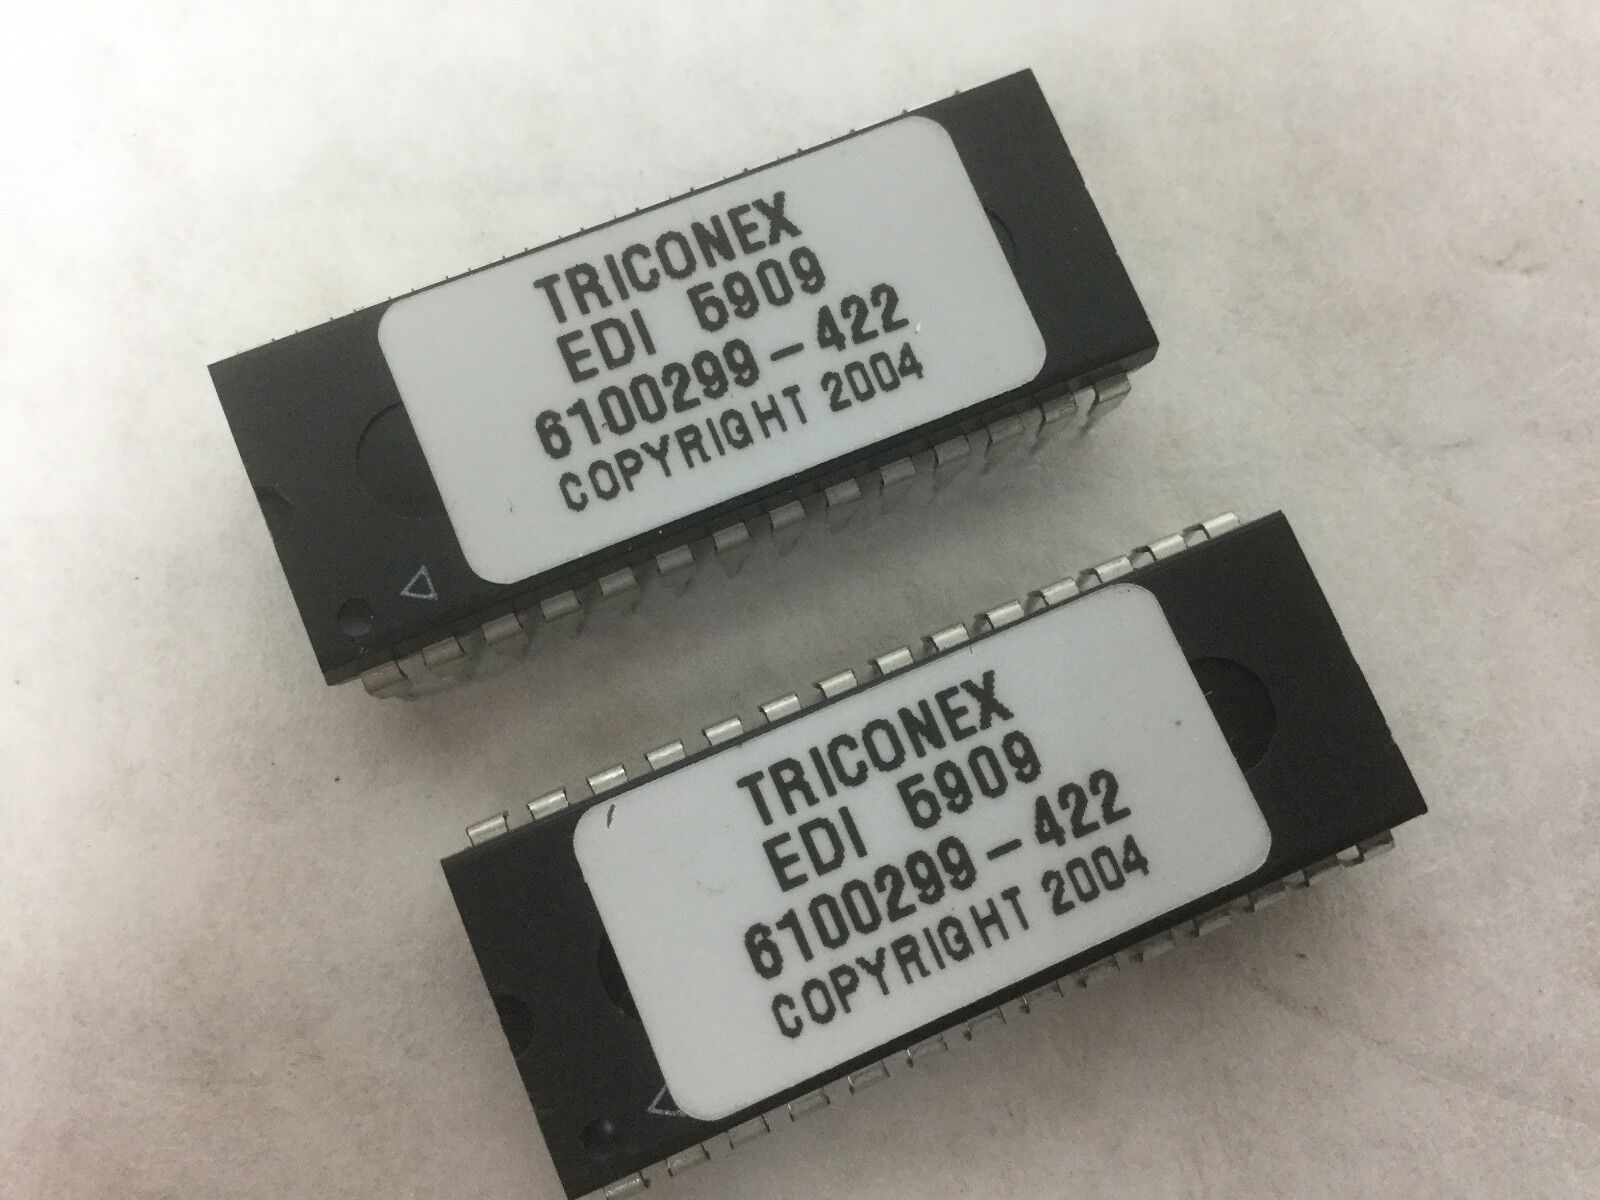 TRICONEX, EDI 5909, 6100299-422, 28 Pin, Lot of 2, NEW